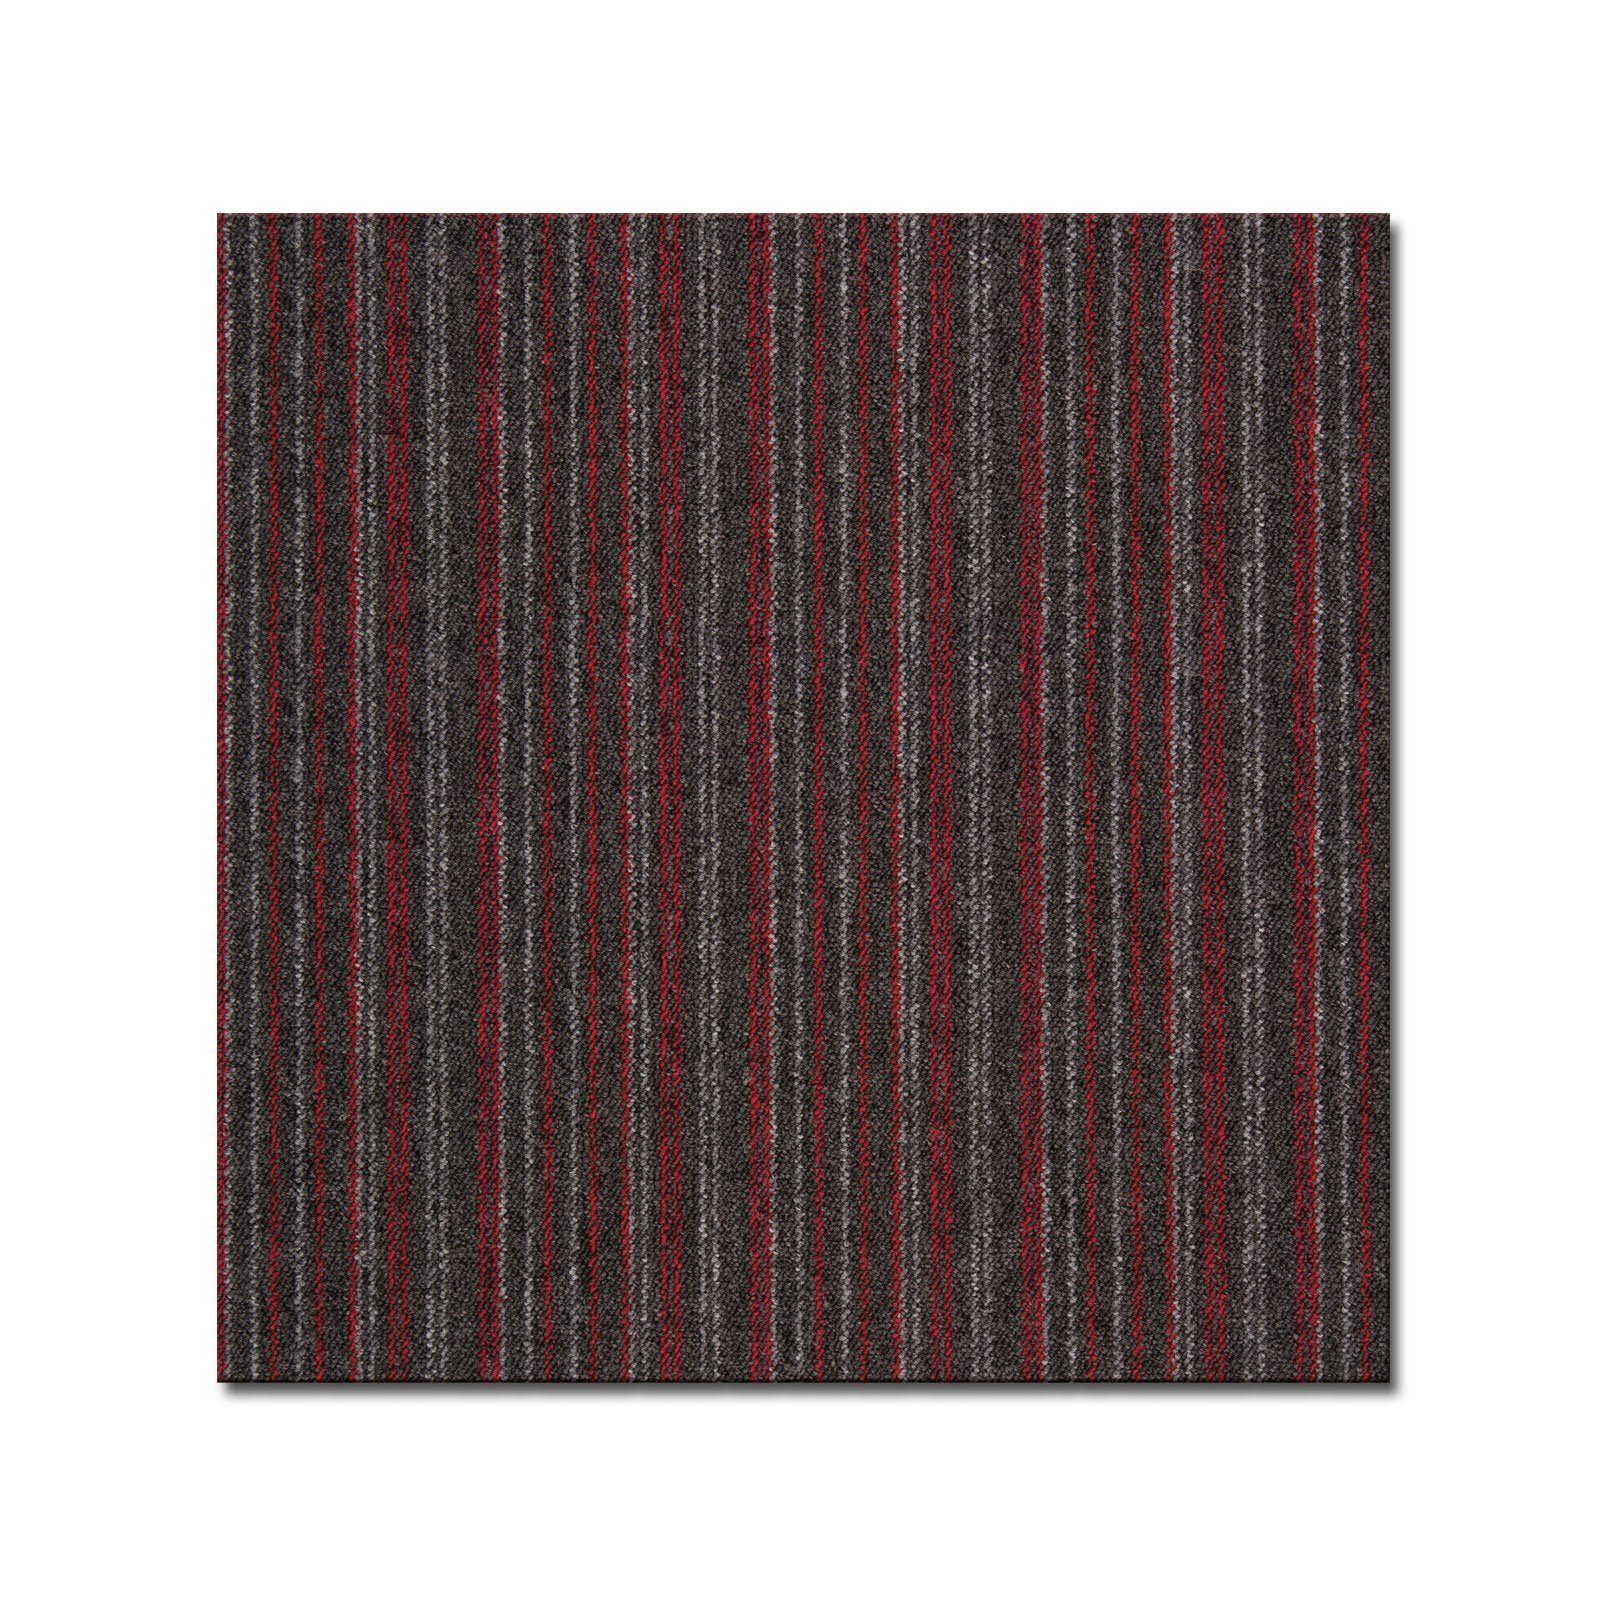 Teppichfliese Vienna, 50 x 50 cm, Bodenschutzfliese, Fliese, casa pura, quadratisch, Höhe: 6 mm, Selbstliegend Rot-gestreift 7785